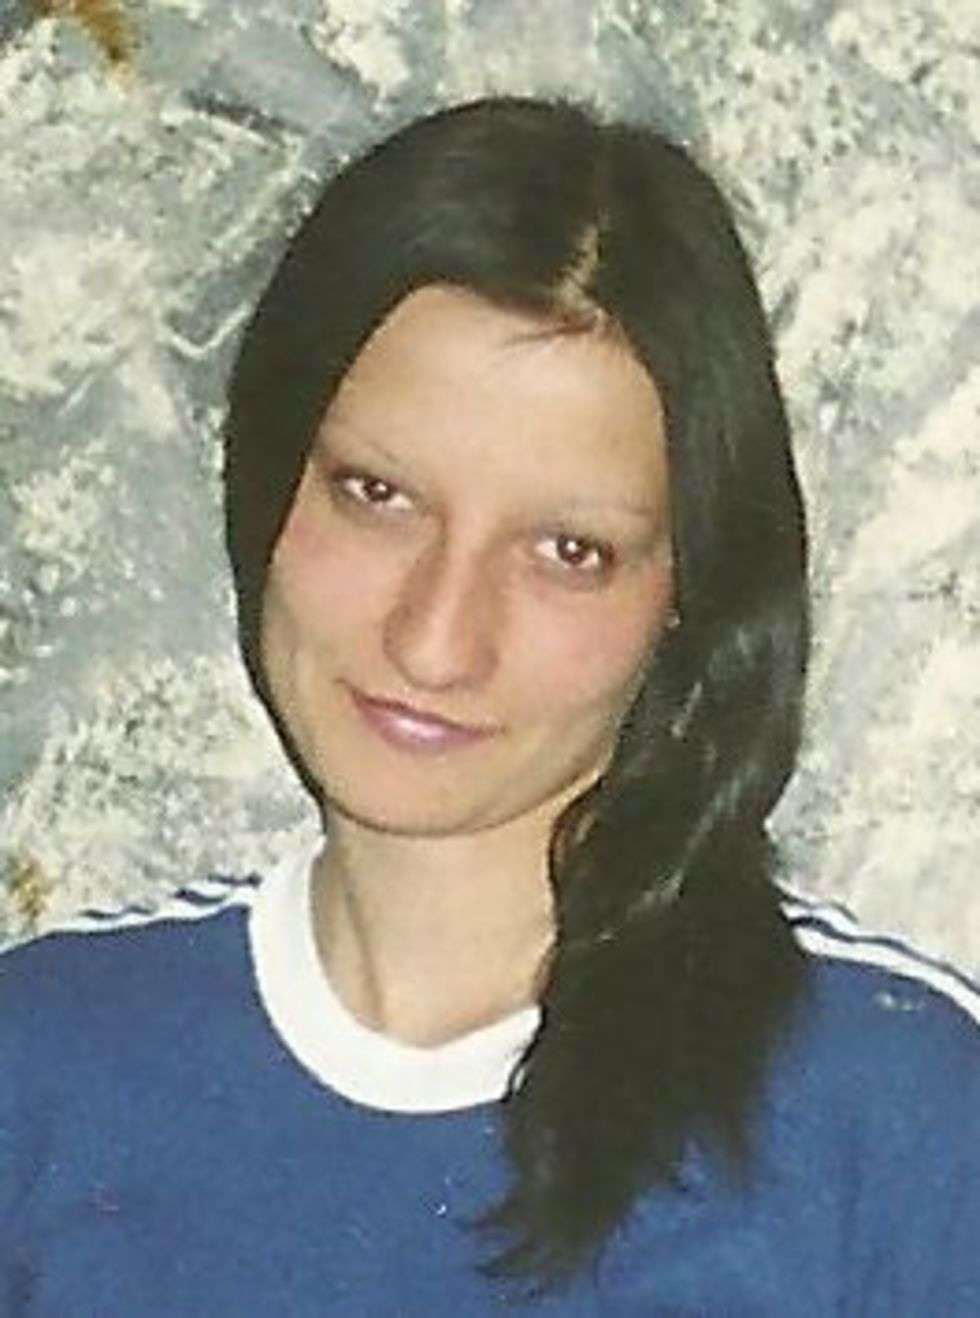  15 września 2004 r. w miejscowości Hanna (Lubelskie) zaginął Radosław Semeniuk.  W dniu zaginięcia wyszedł z domu i do chwili obecnej nie powrócił. Ma 30 lat, 180 cm wzrostu i szare oczy. W dniu zaginięcia ubrany był w czarną, ortalionową kurtkę, niebieskie spodnie i długie czarne buty. 